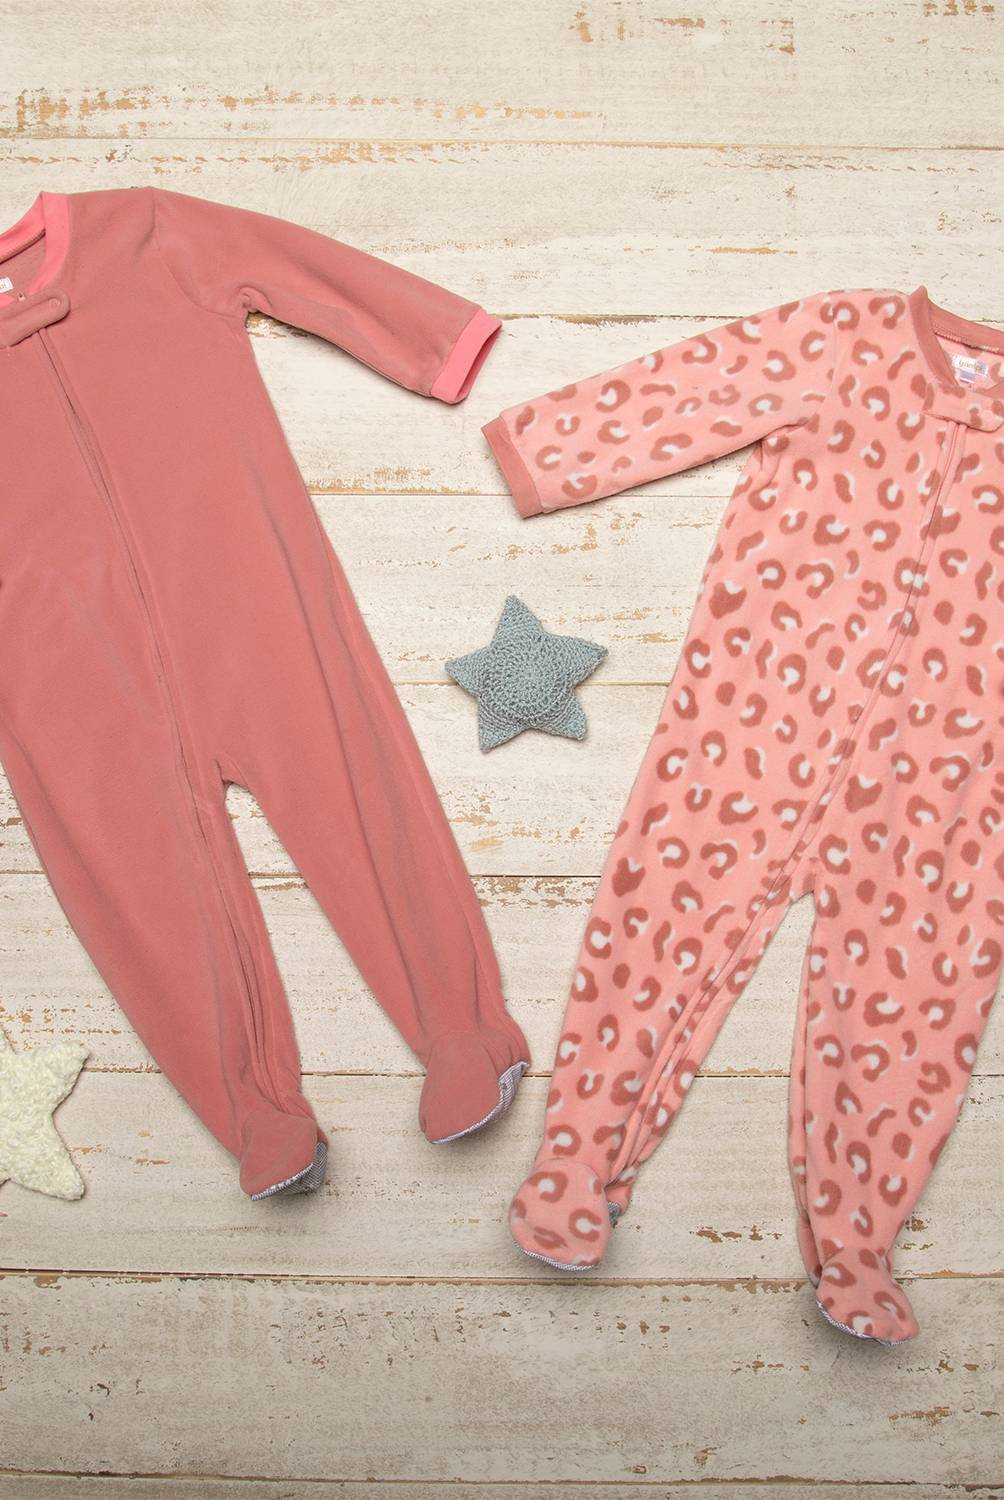 YAMP - Pijama Pack De 2 Unidades Bebé Niña